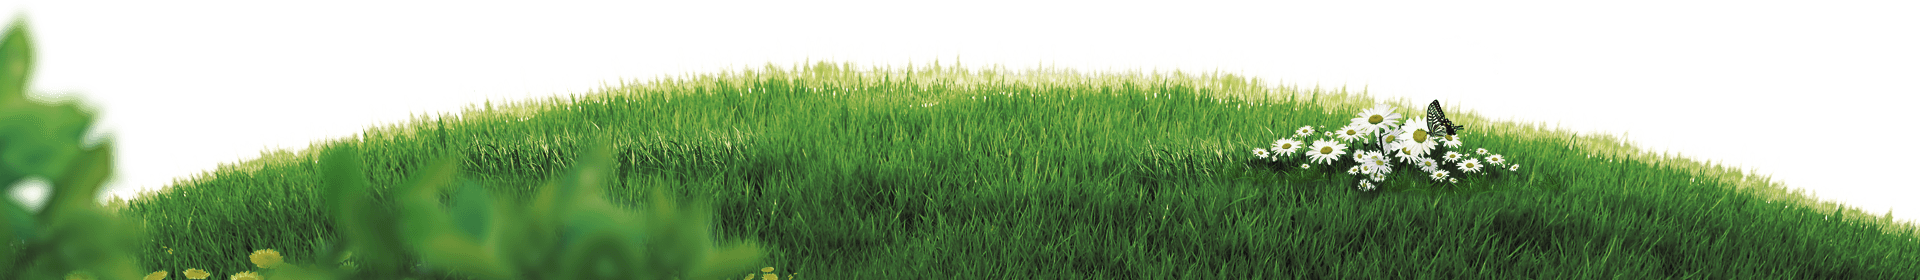 grass clipart plains